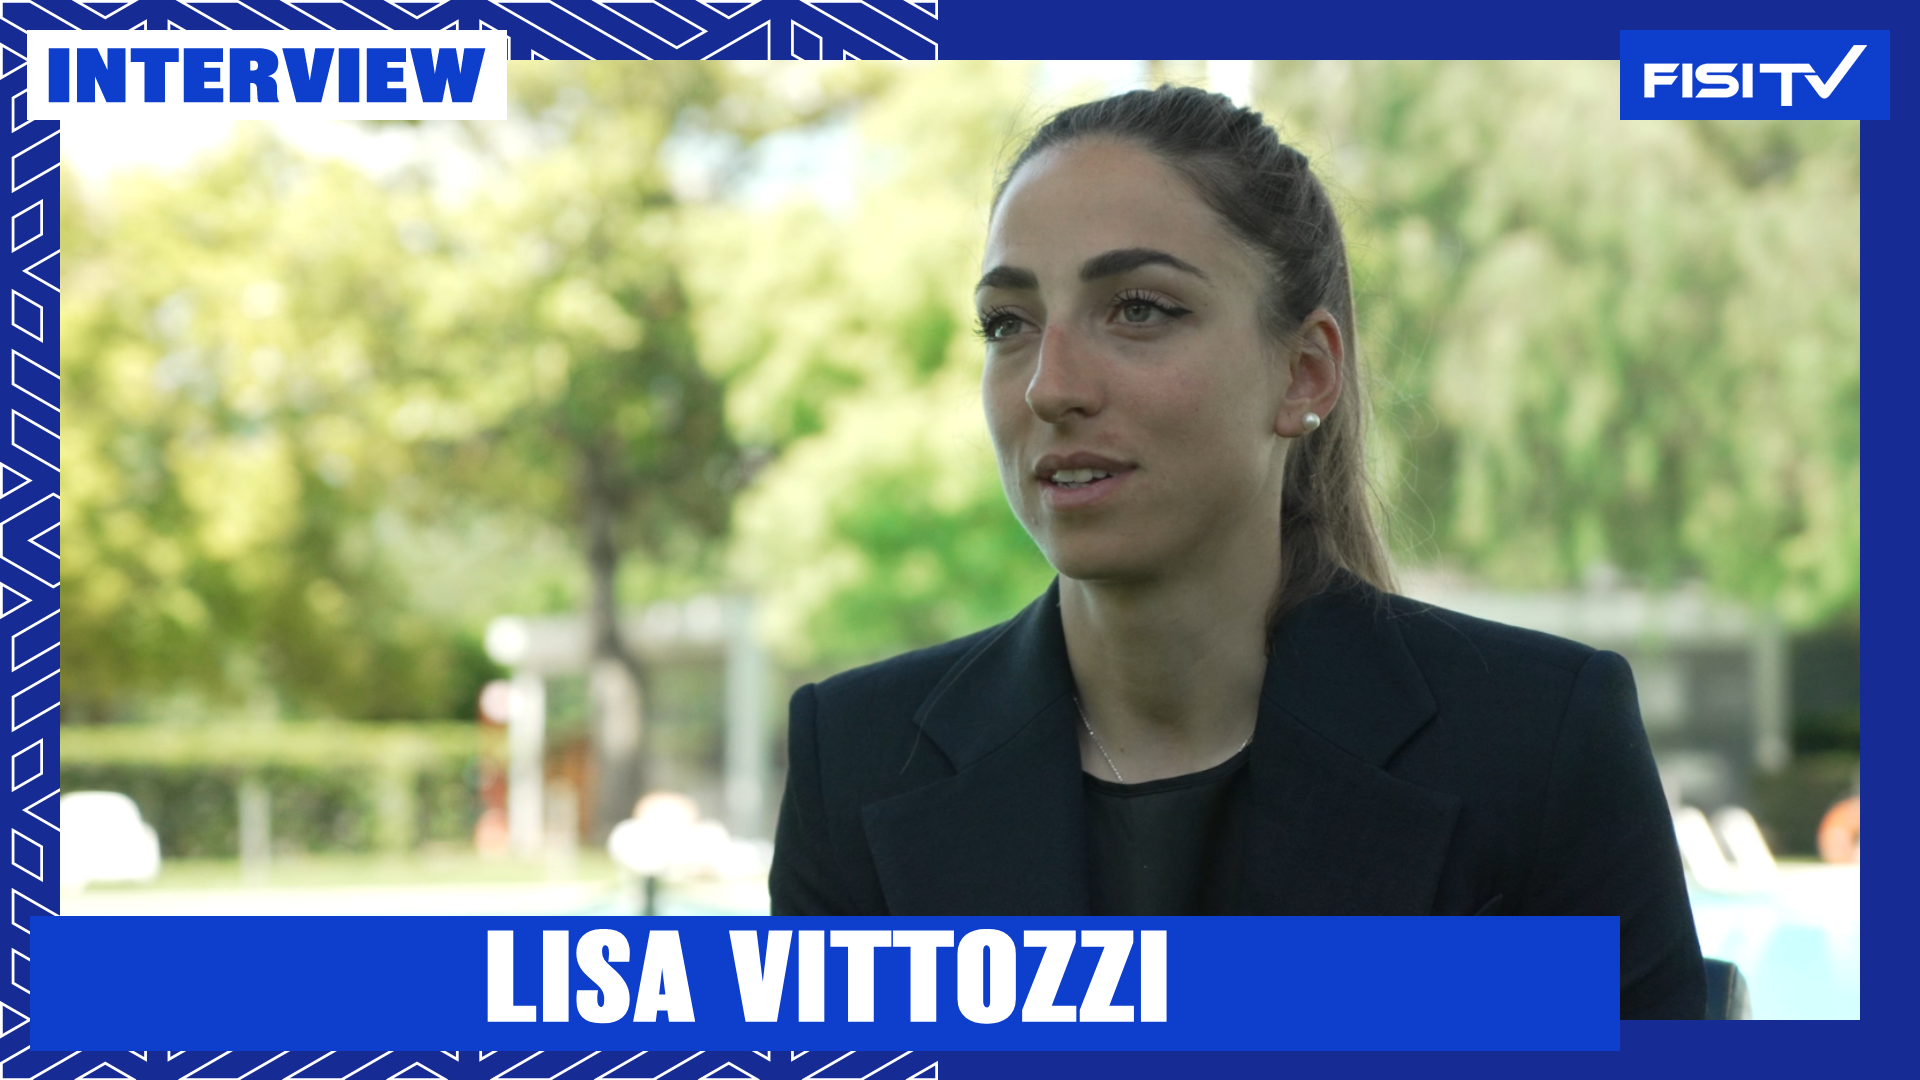 Lisa Vittozzi | “È stata un’emozione grandissima che mi ricorderò per sempre” | FISI TV